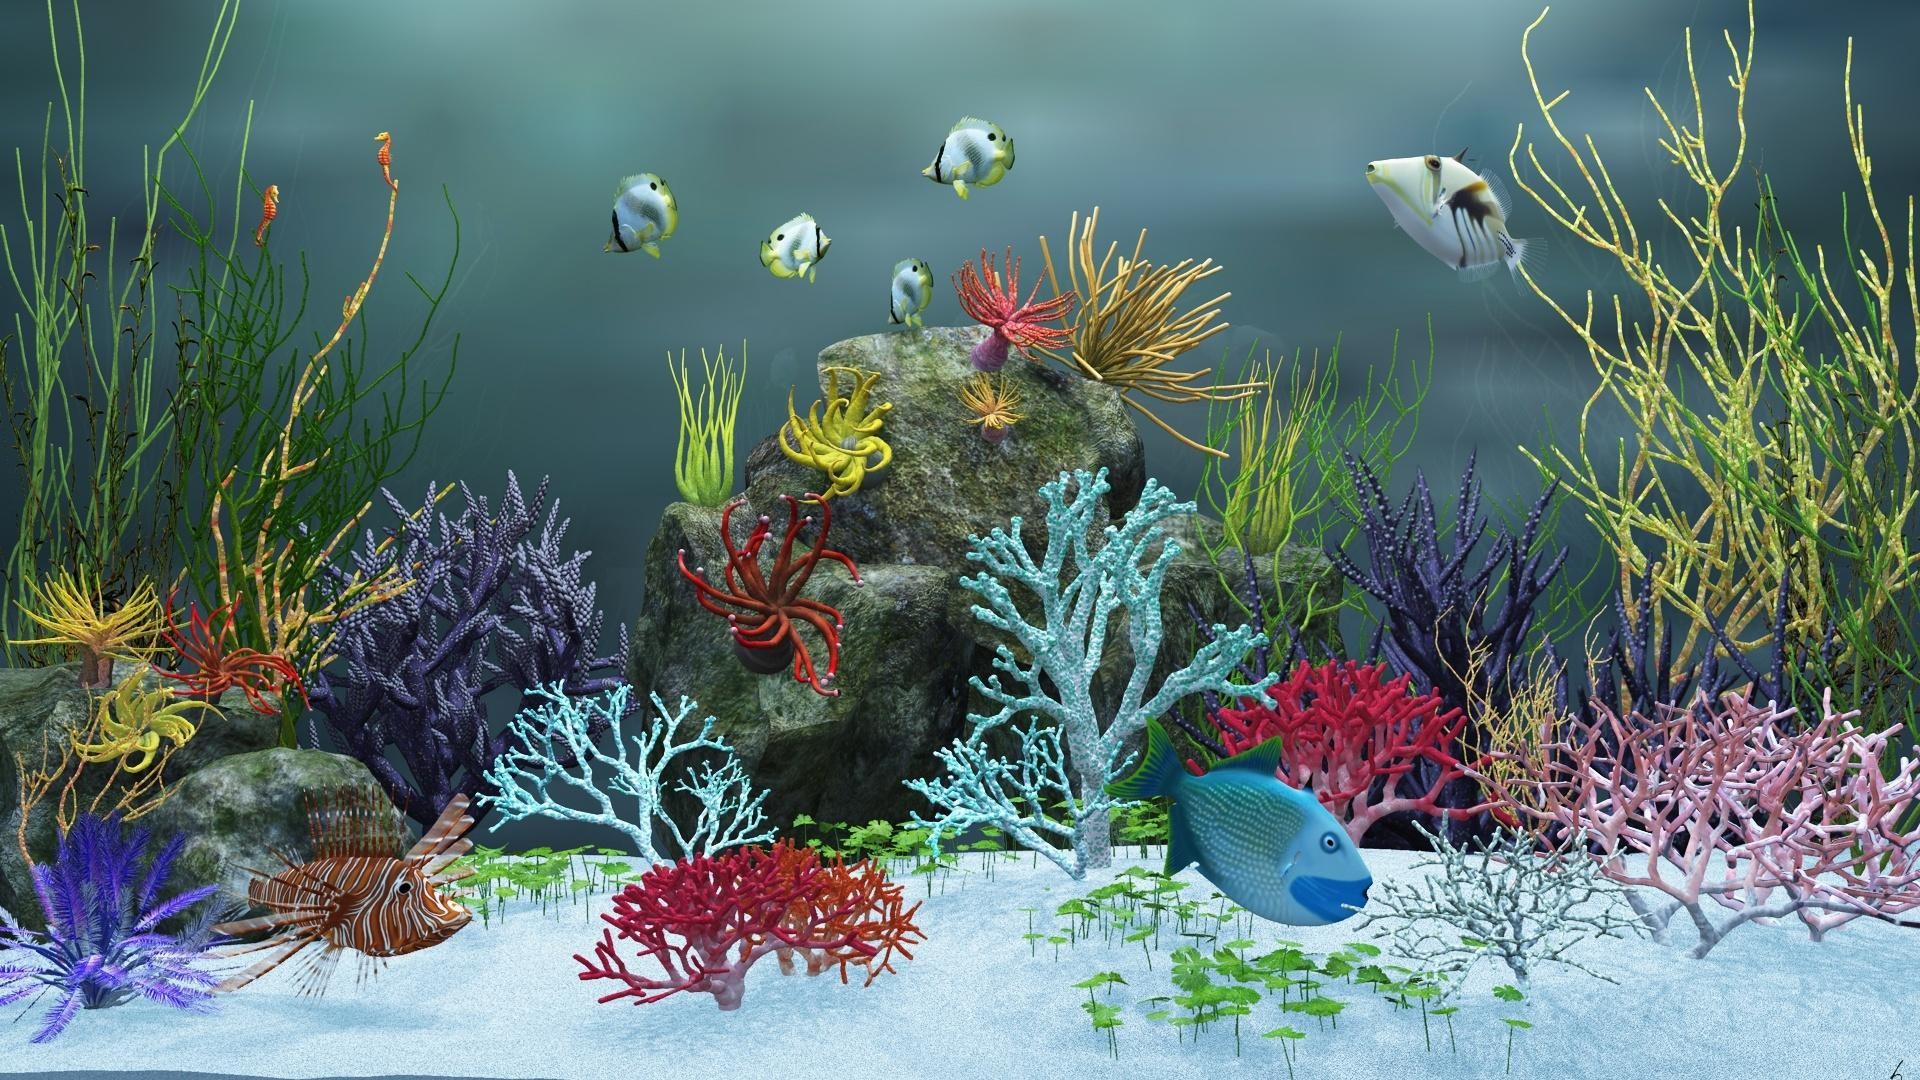 1920x1080 Animated Aquarium Desktop Wallpaper Windows : Aquarium desktop background